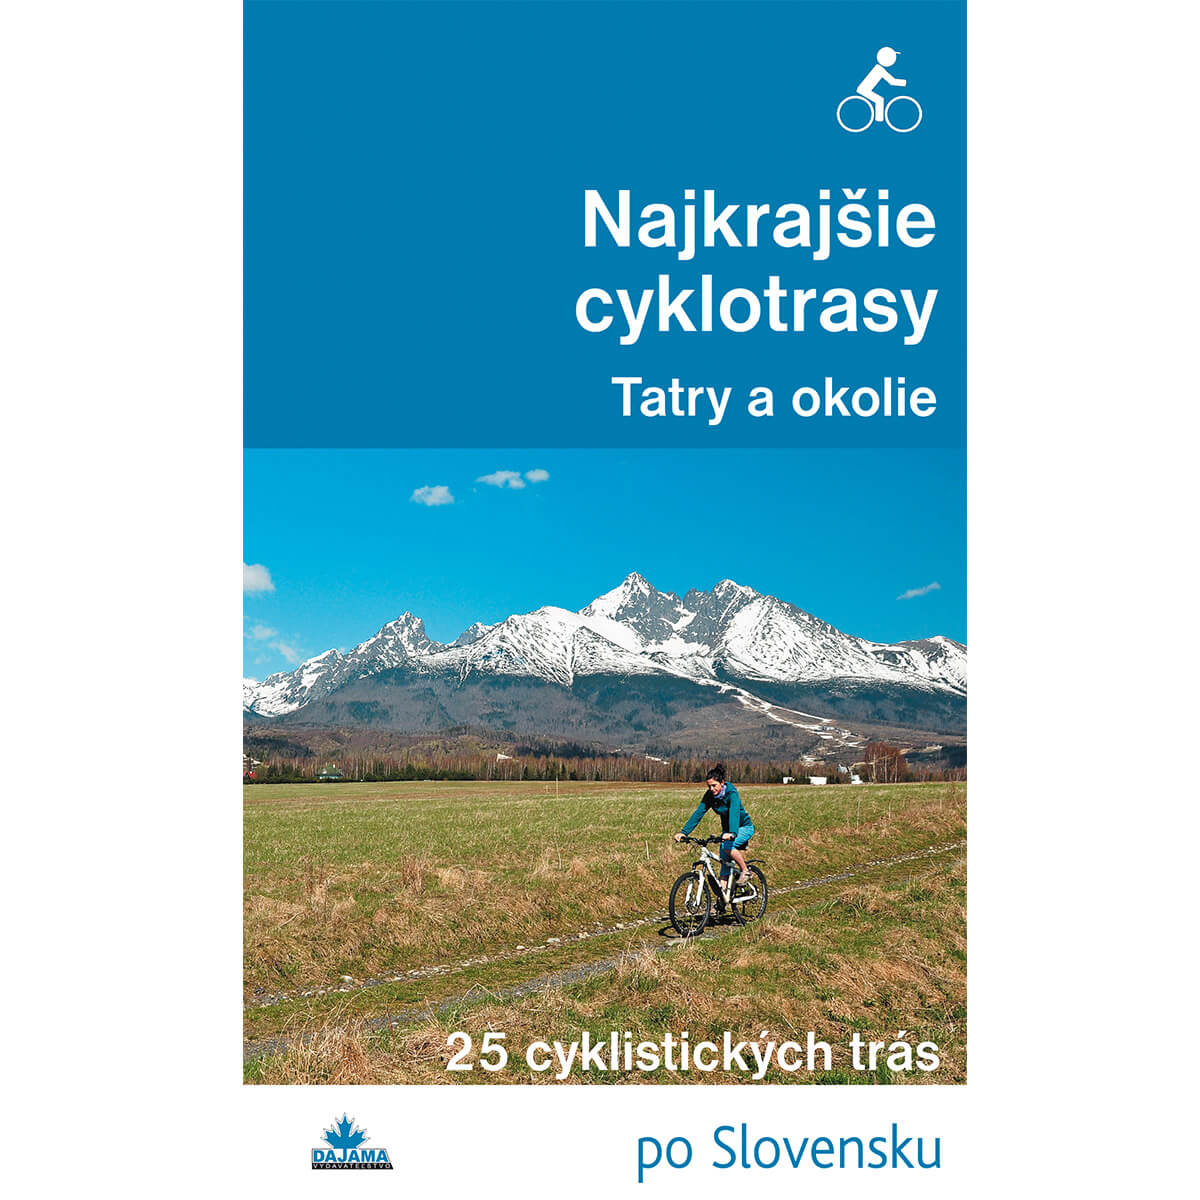 Kniha Najkrajšie cyklotrasy Tatry a okolie - 25 cyklistických trás po Slovensku z vydavateľstva Dajama